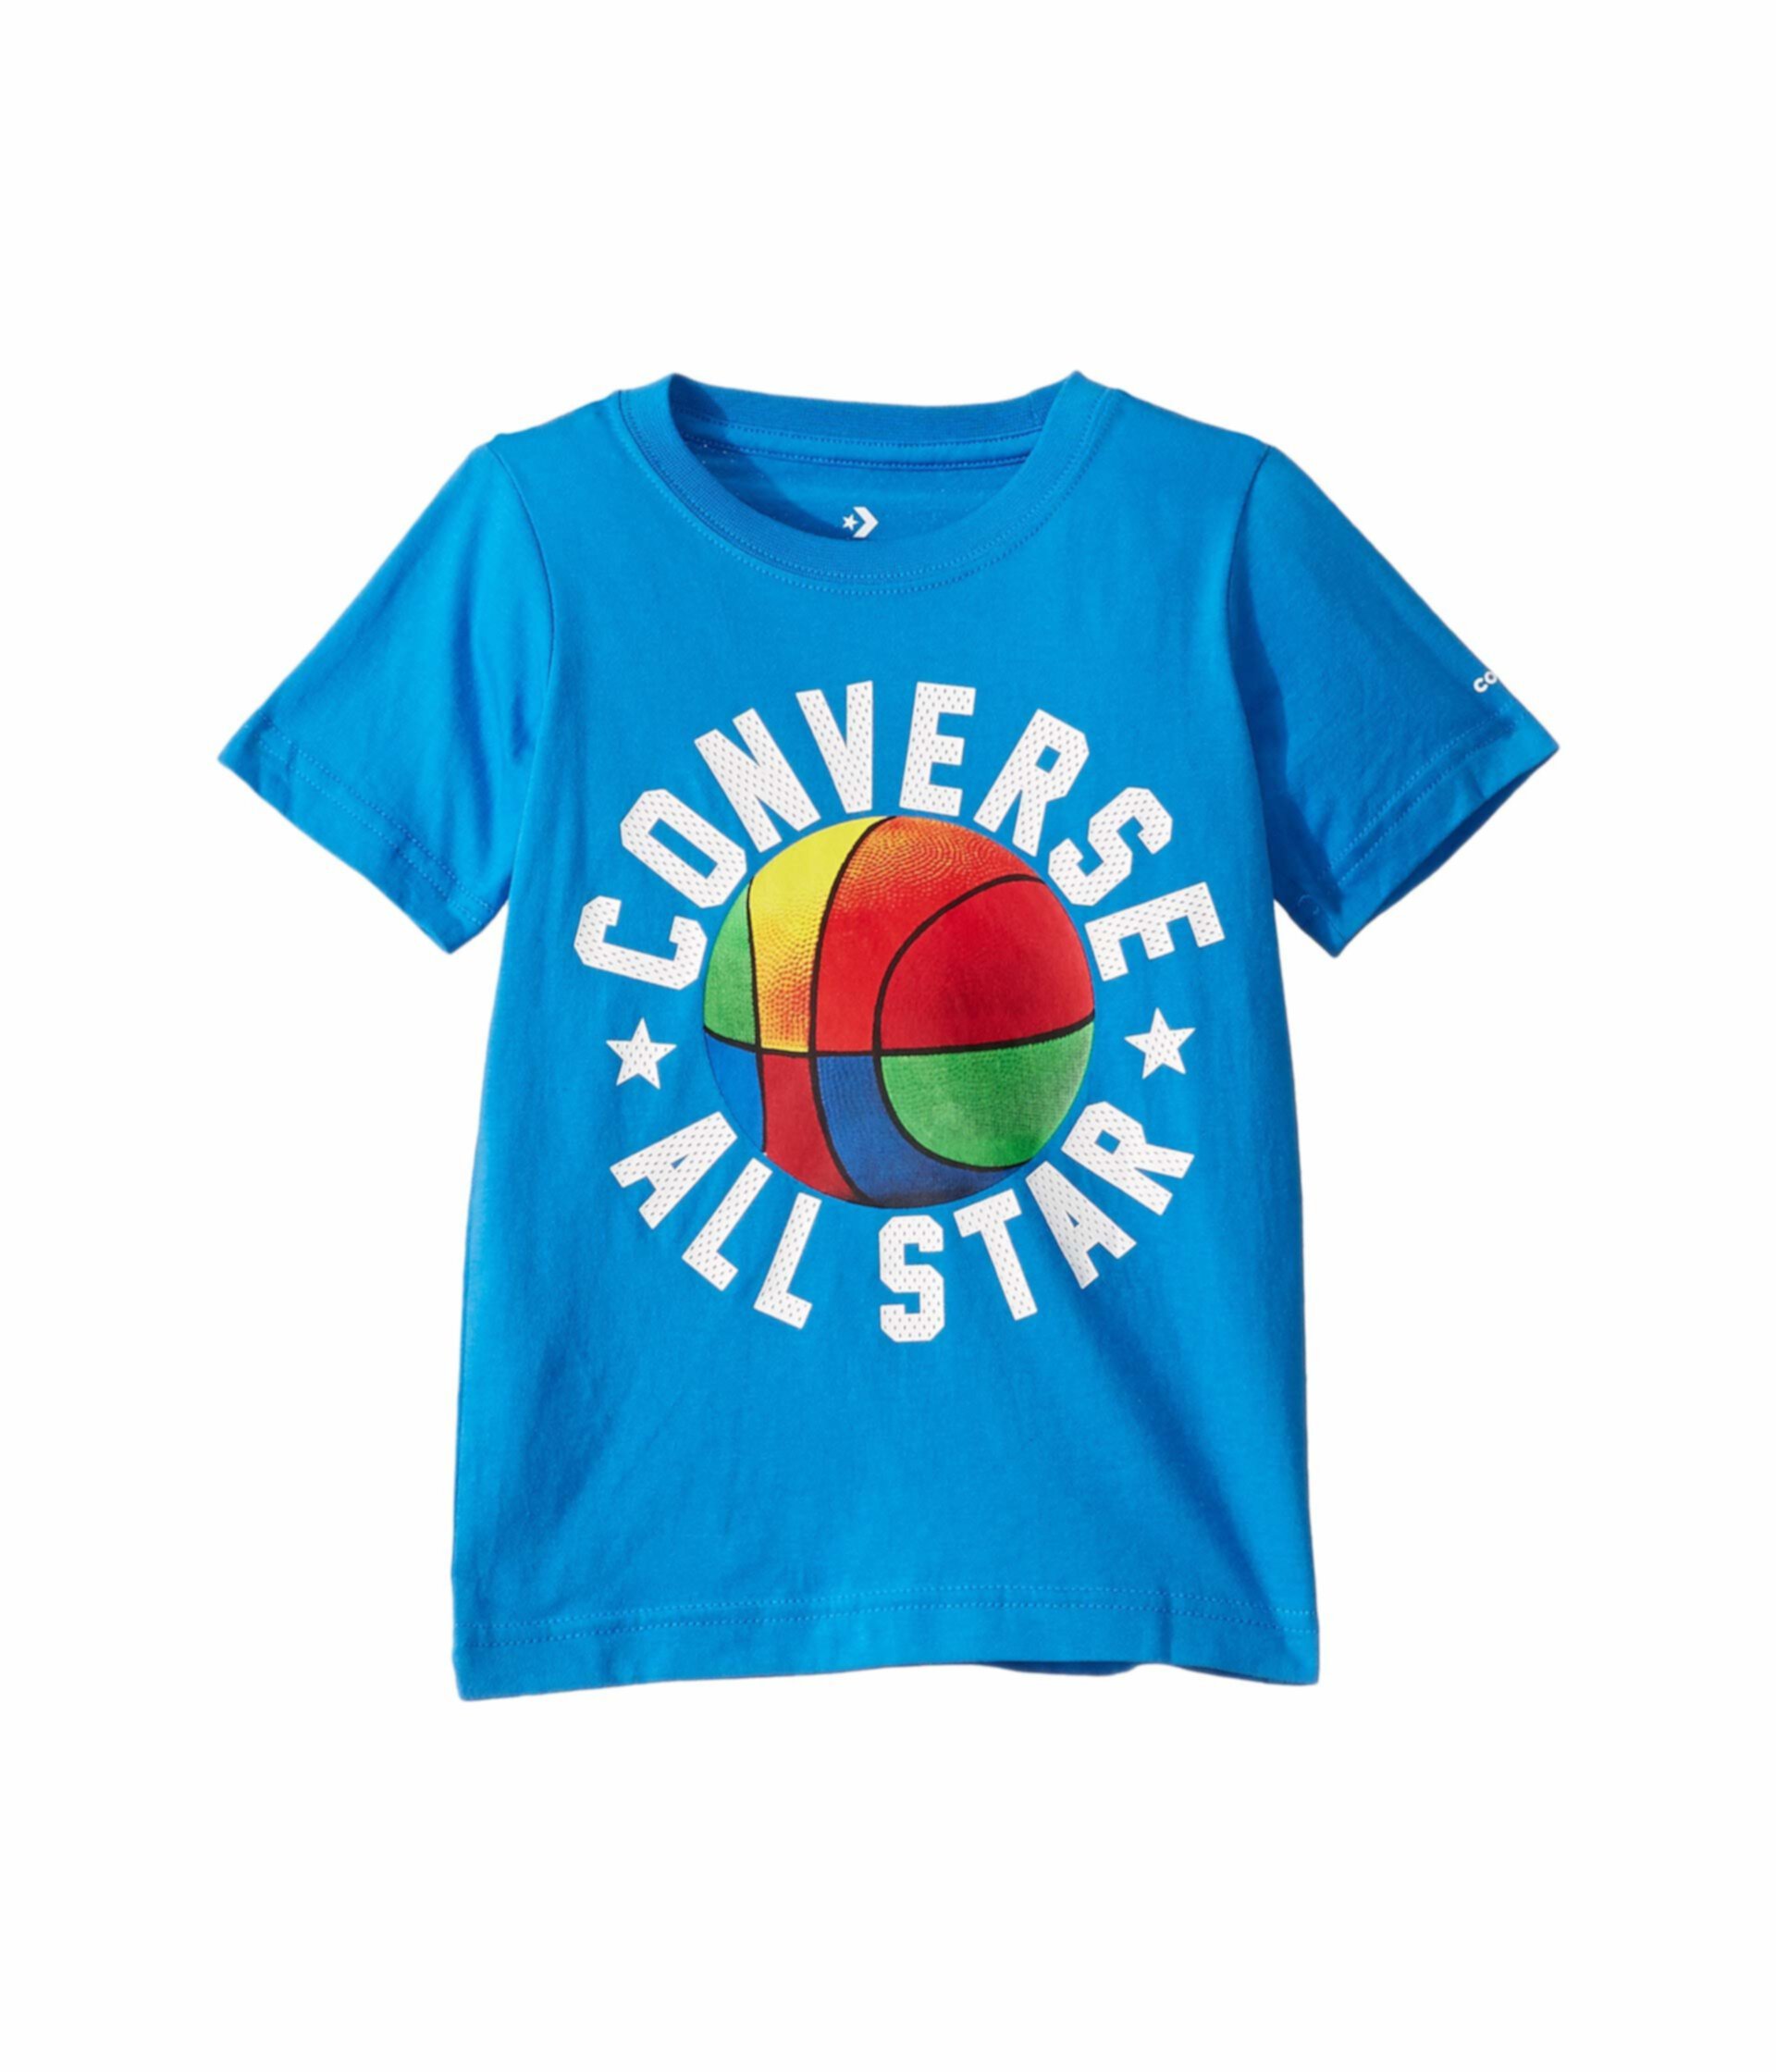 Многоцветная баскетбольная футболка (маленькие дети) Converse Kids